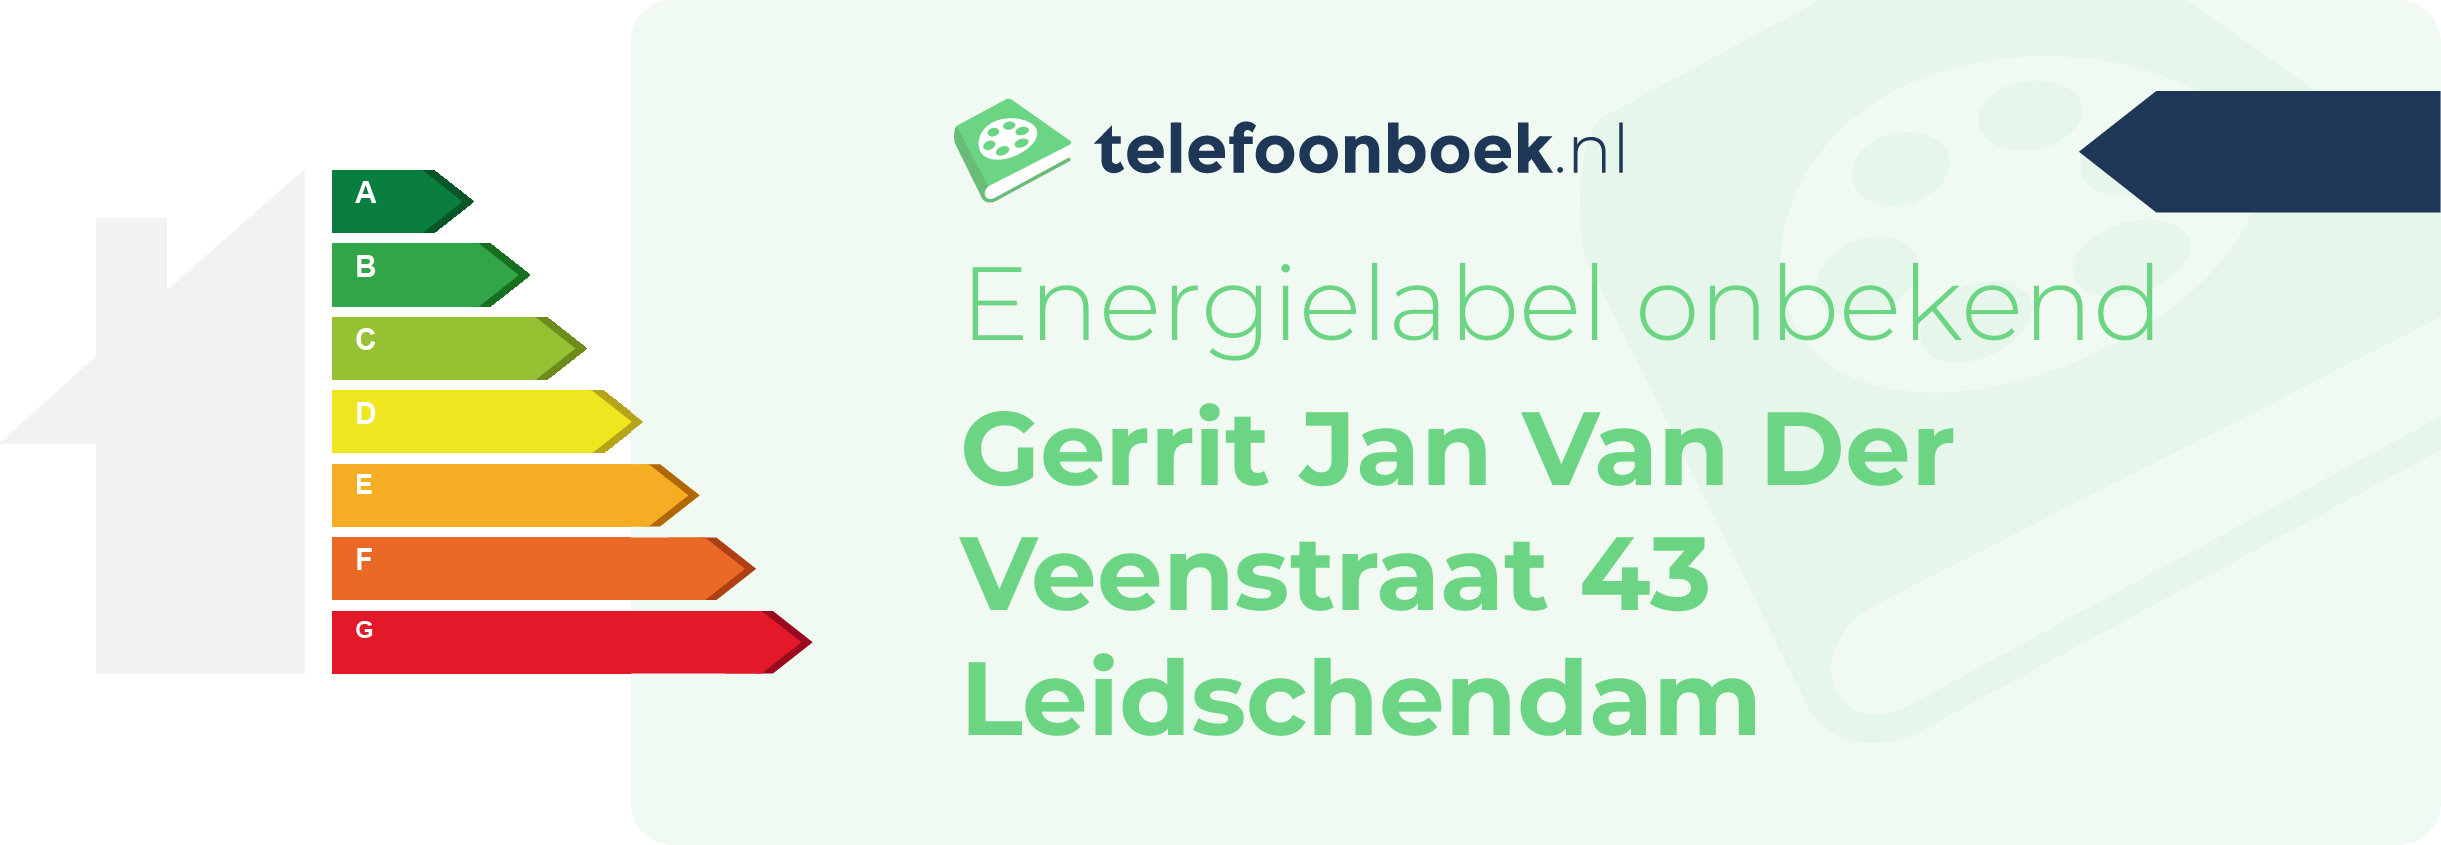 Energielabel Gerrit Jan Van Der Veenstraat 43 Leidschendam